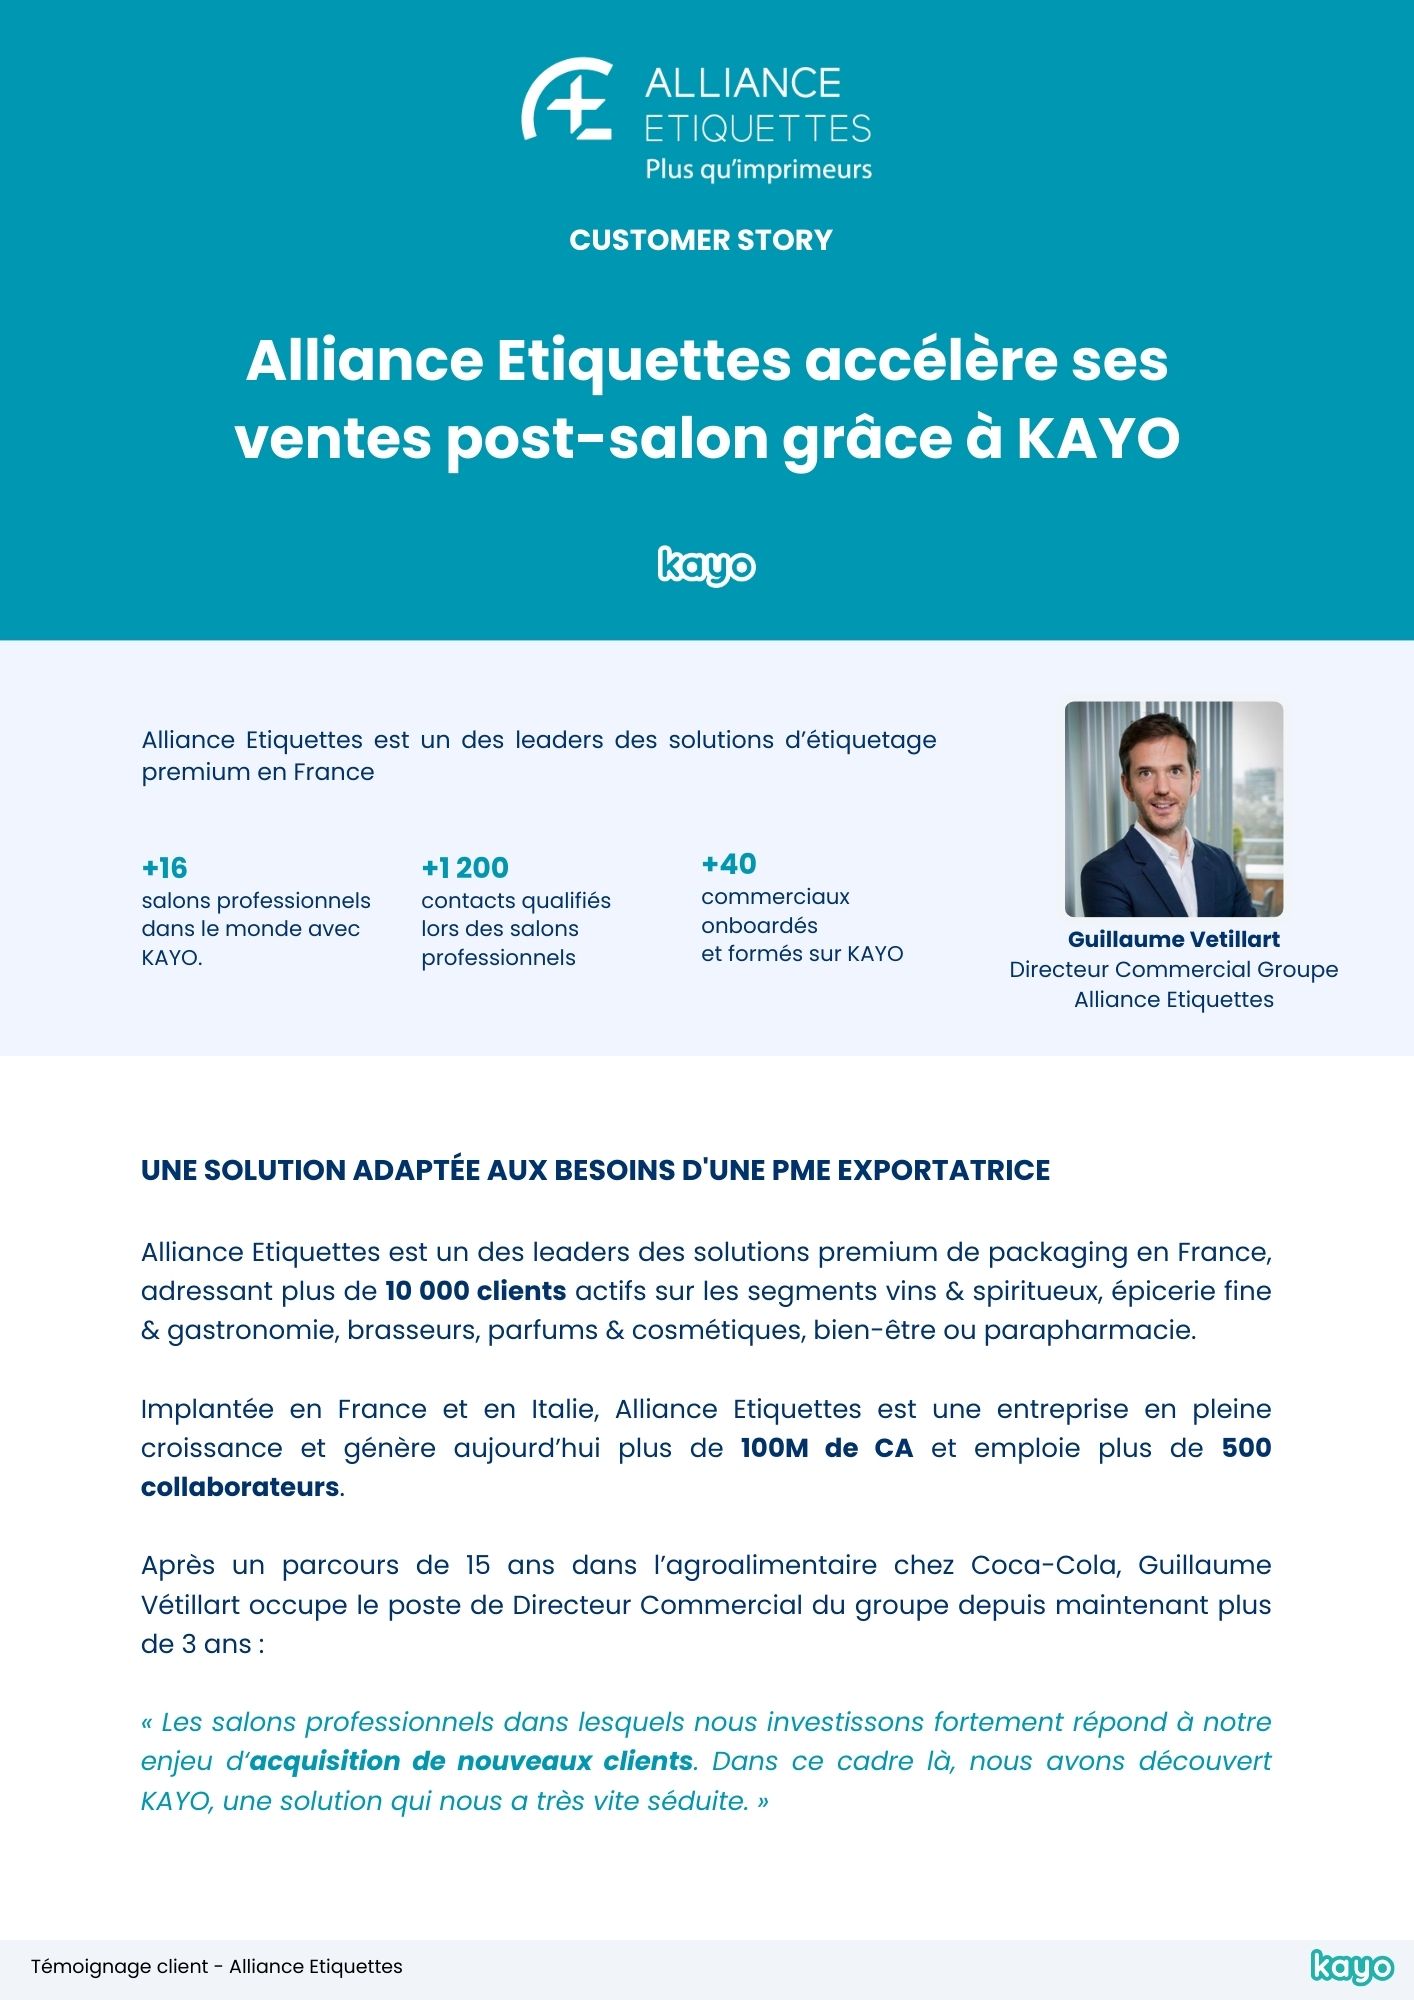 Testimonial Guillaume Vetillart - Alliance Etiquettes